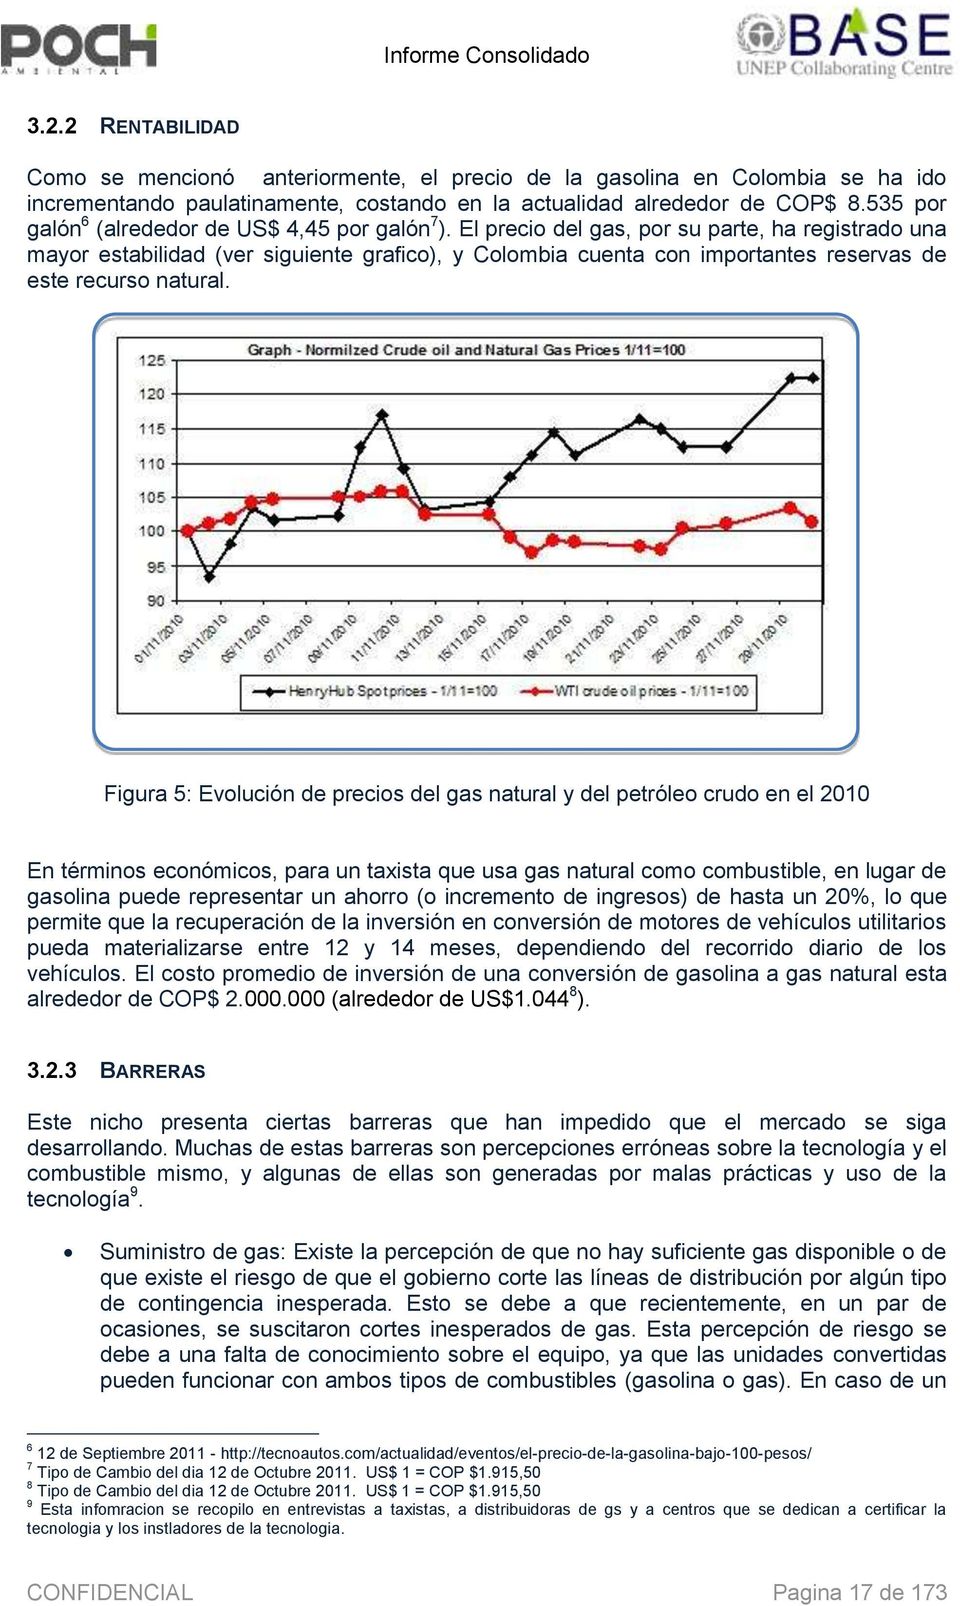 El preci del gas, pr su parte, ha registrad una mayr estabilidad (ver siguiente grafic), y Clmbia cuenta cn imprtantes reservas de este recurs natural.